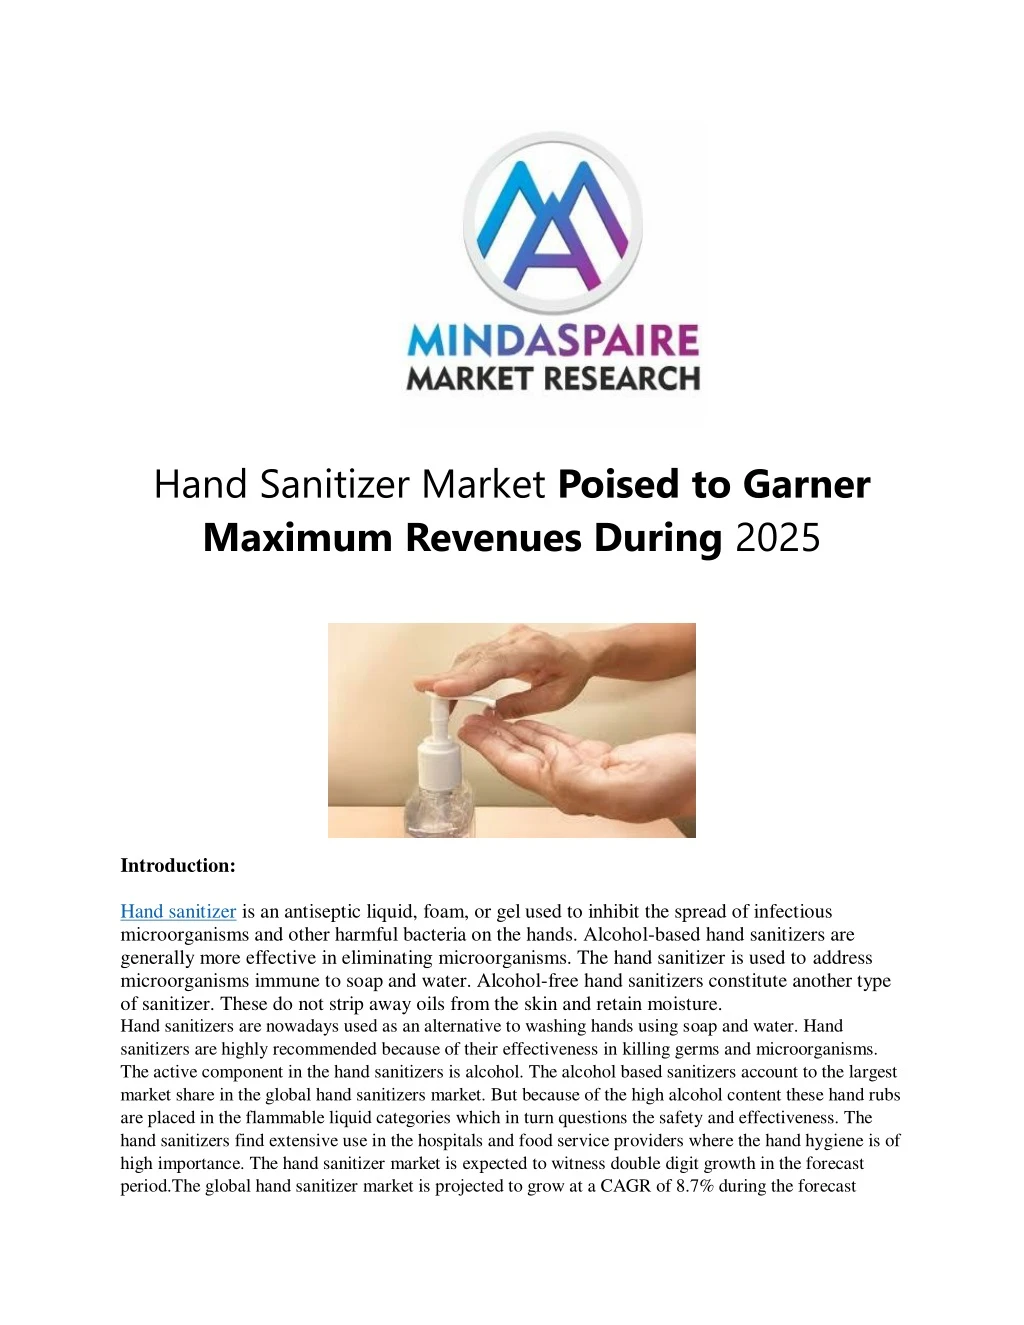 hand sanitizer market poised to garner maximum